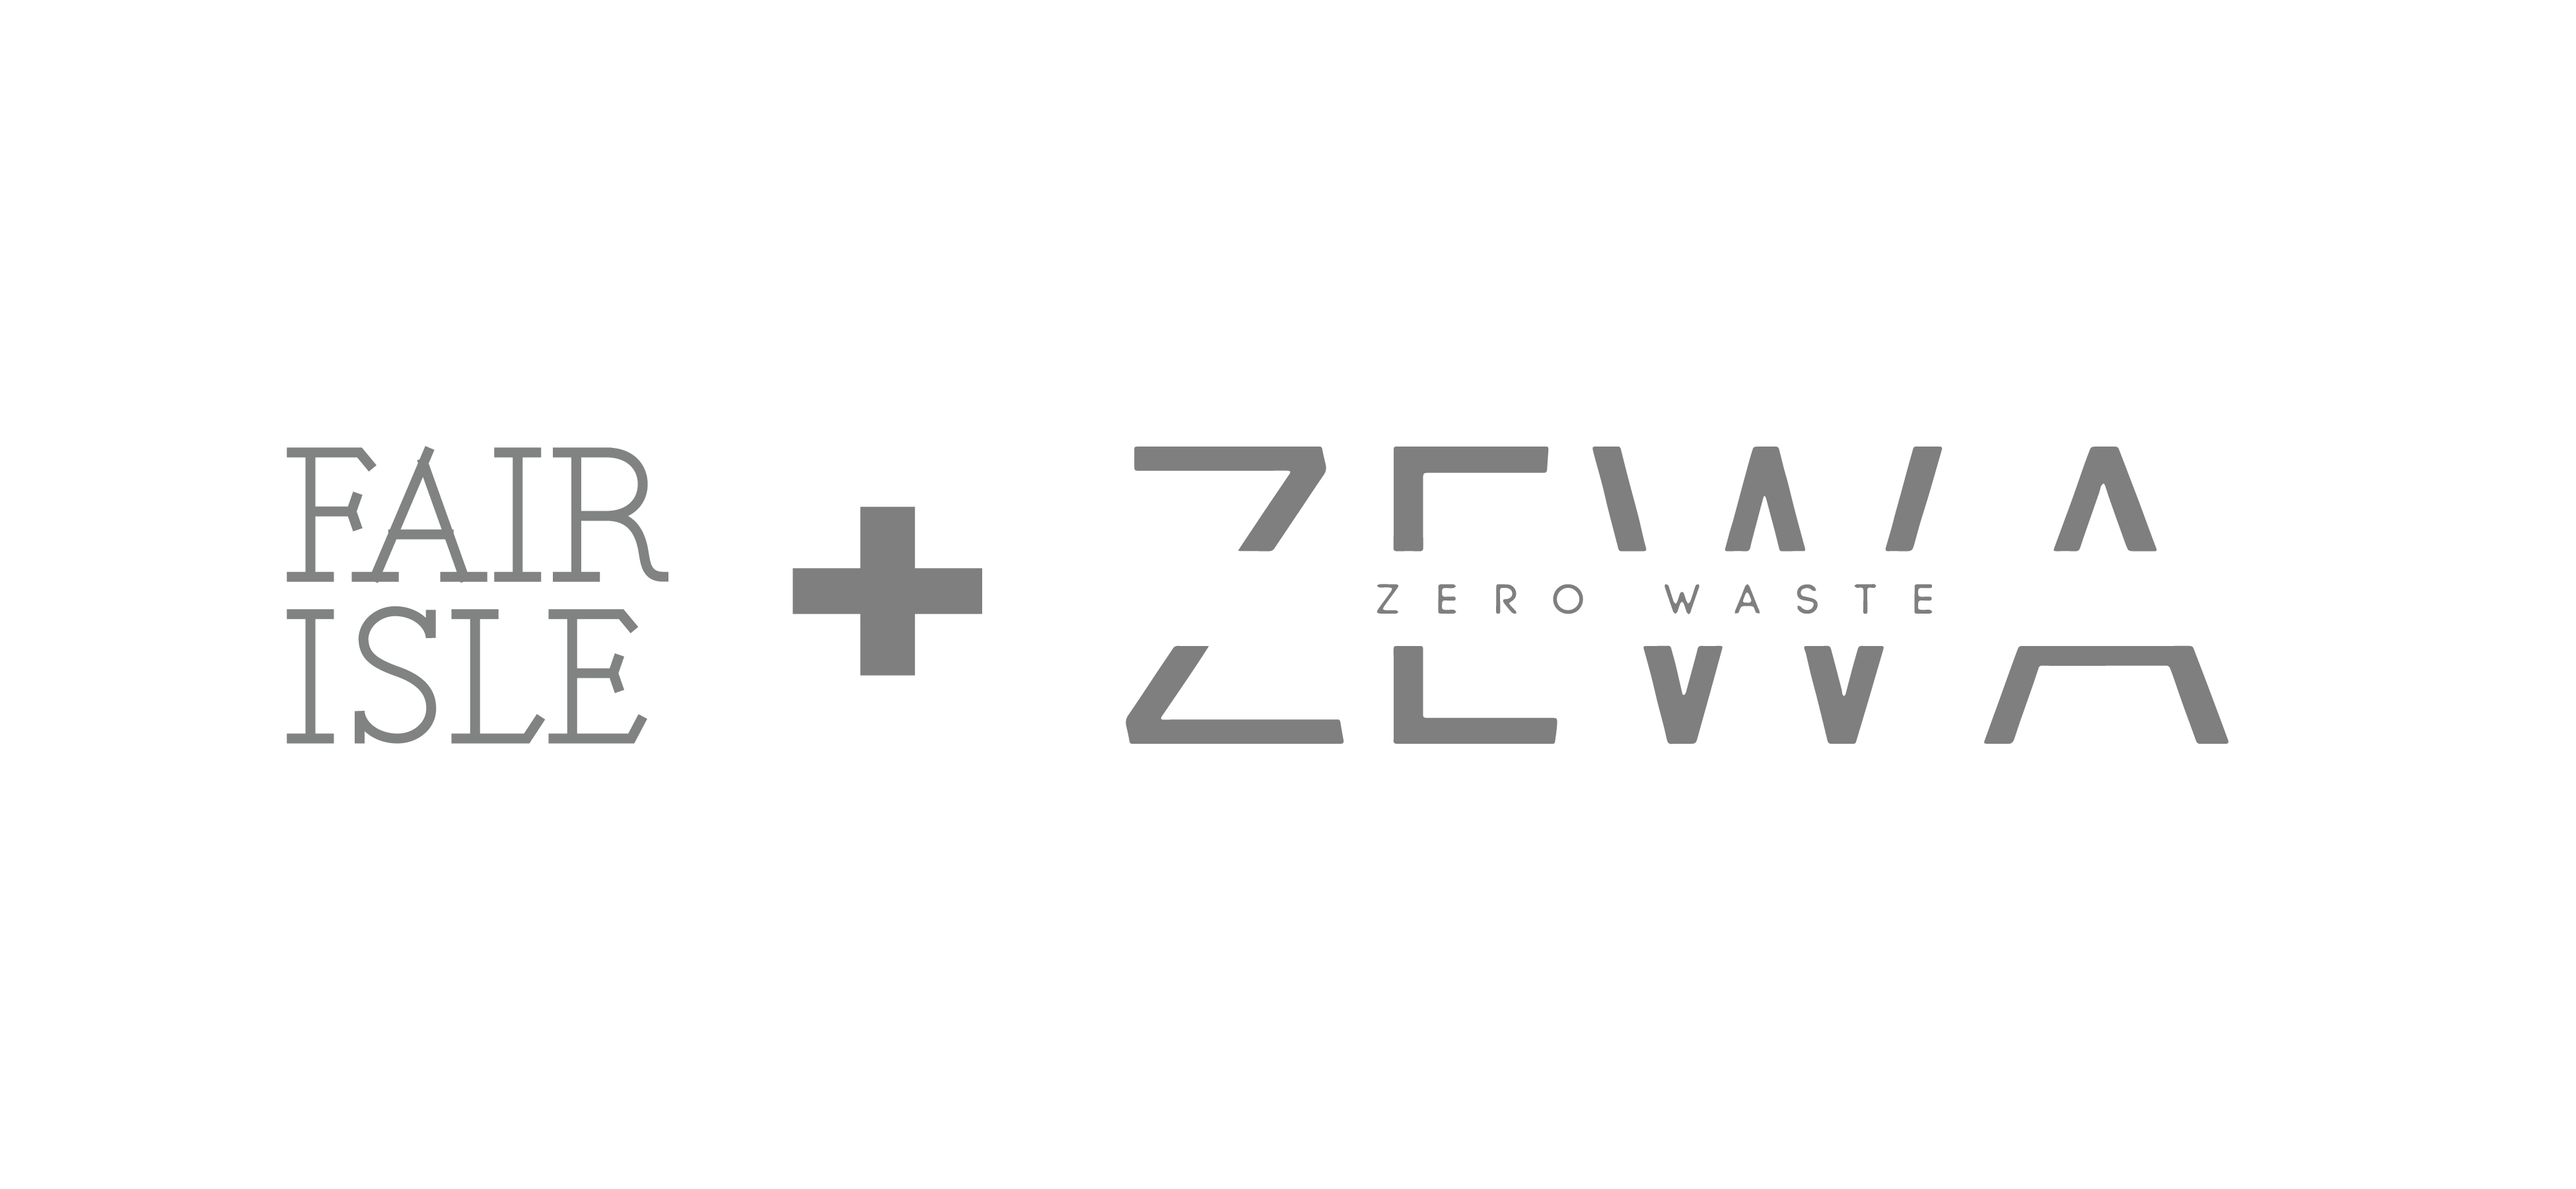 ZEWA-05